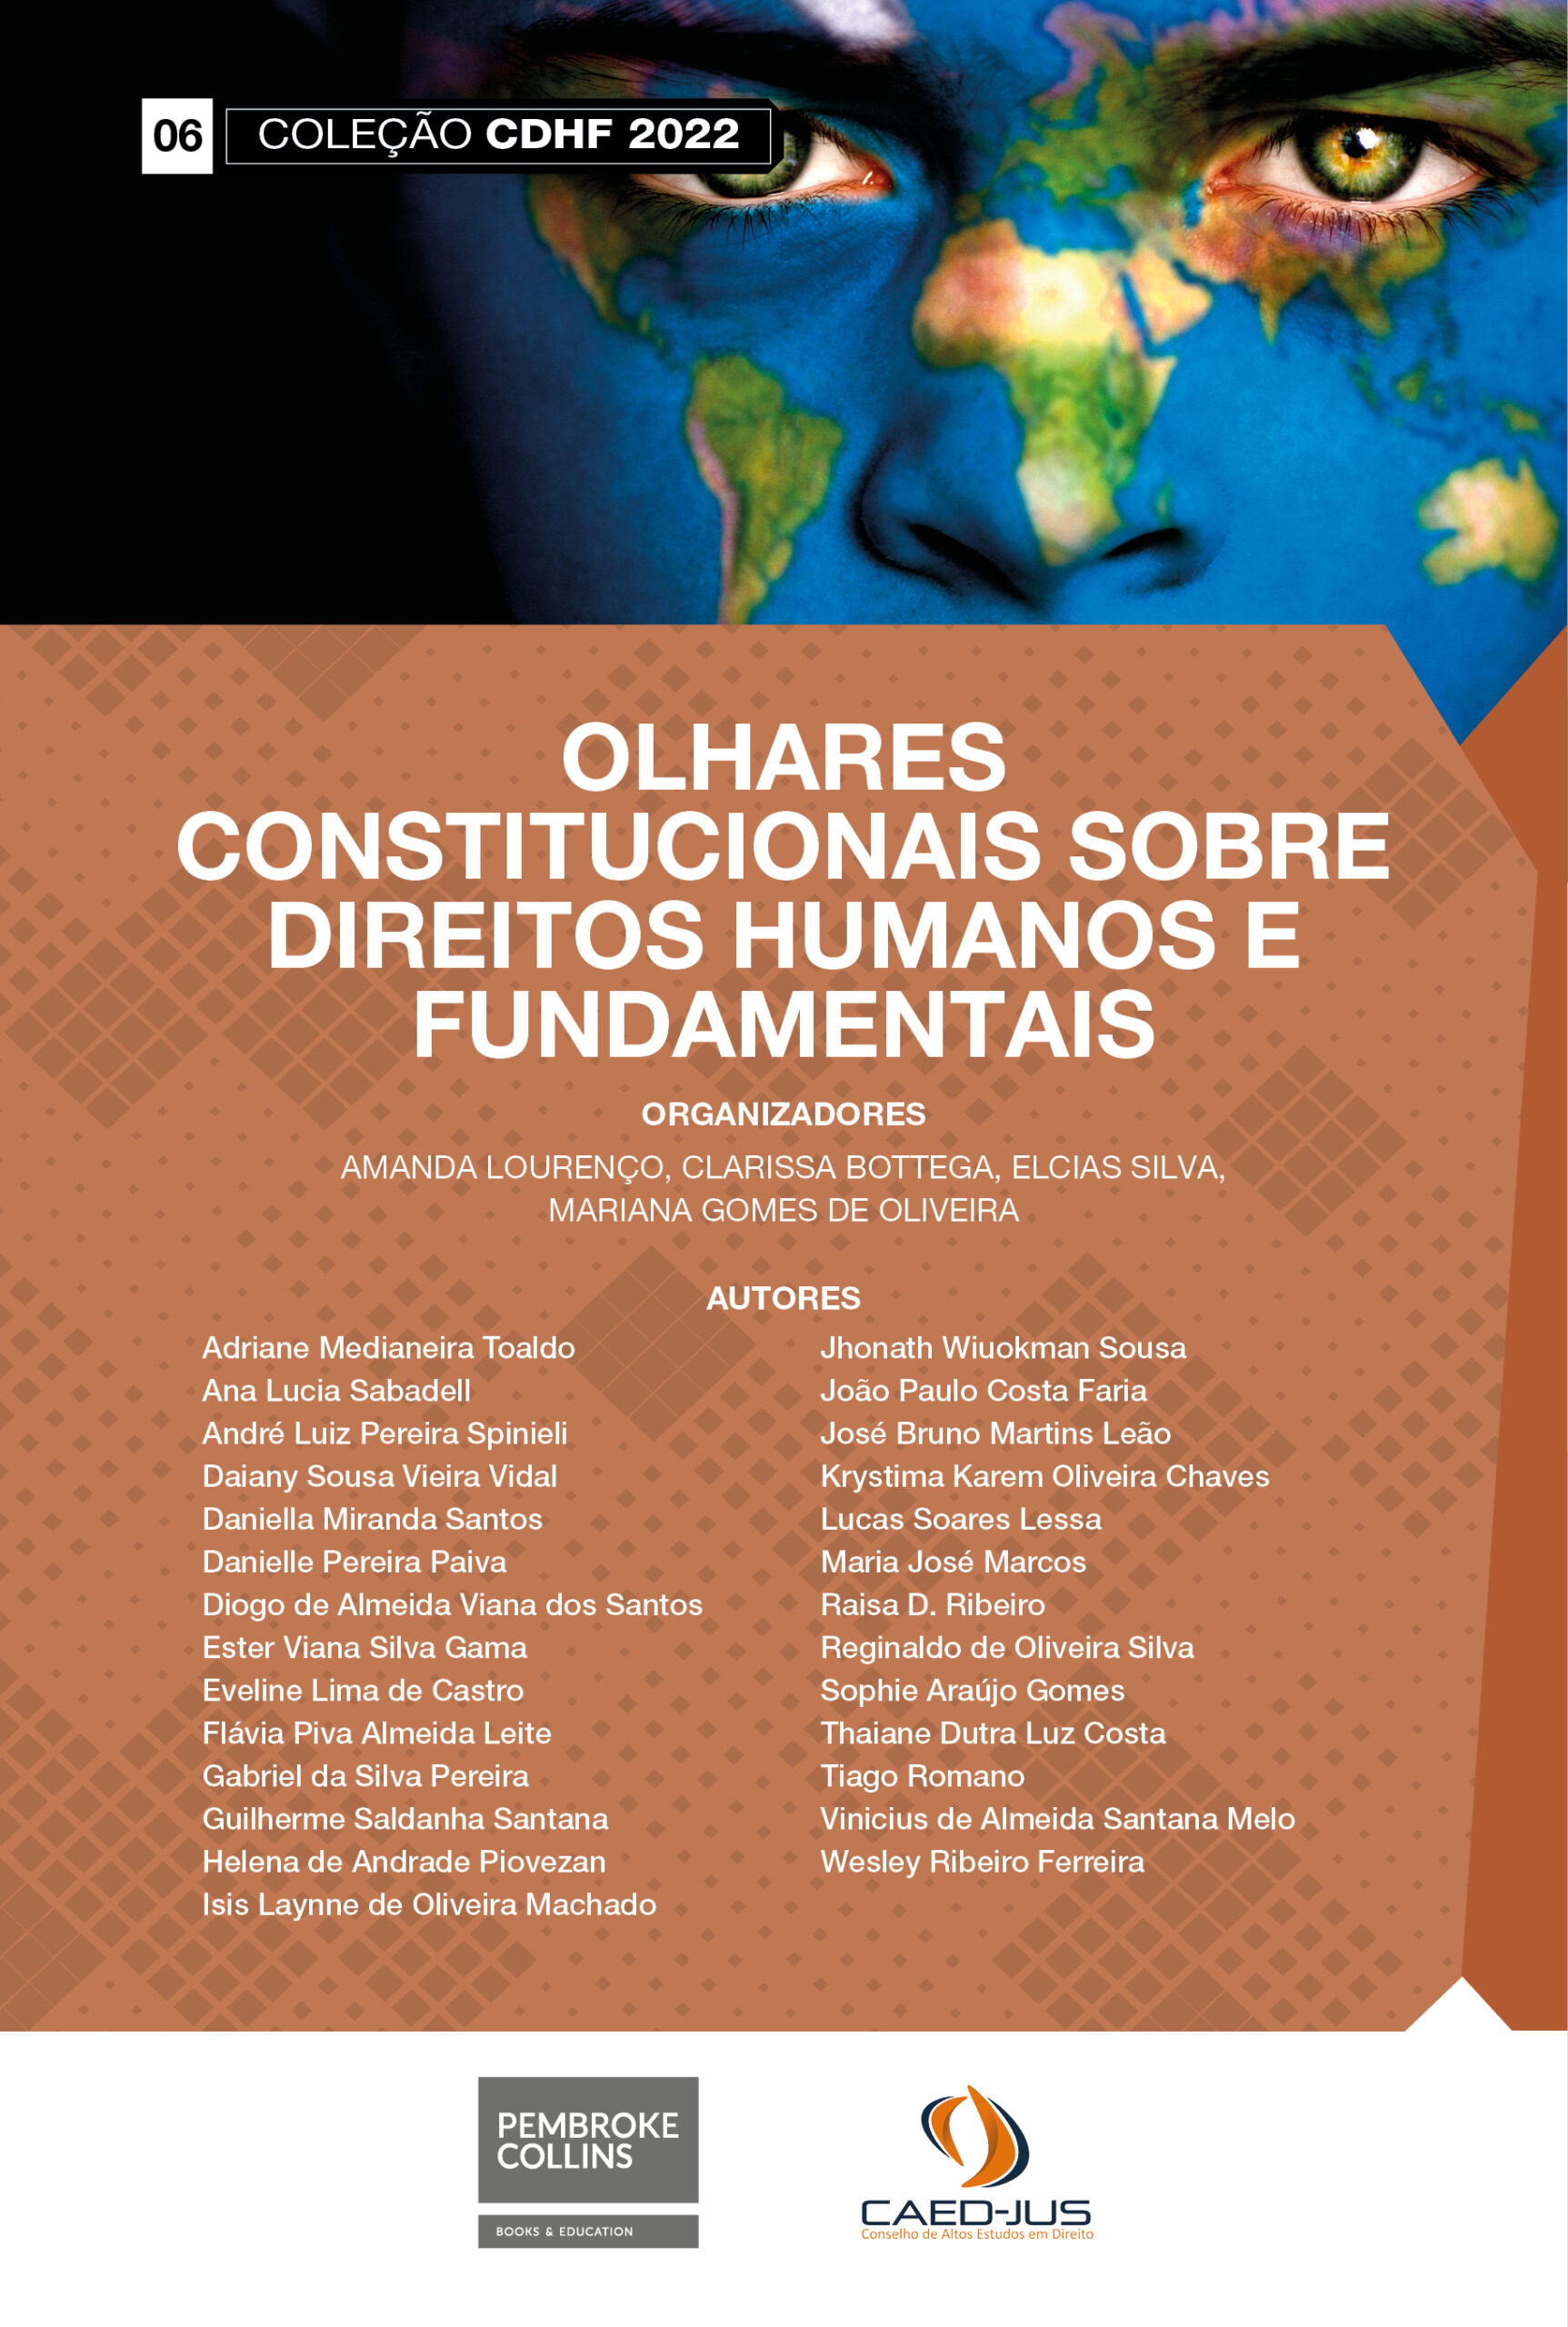 06-CAPA-CDHF2022-OLHARES-CONSTITUCIONAIS-SOBRE-DIREITOS-HUMANOS-E-FUNDAMENTAIS